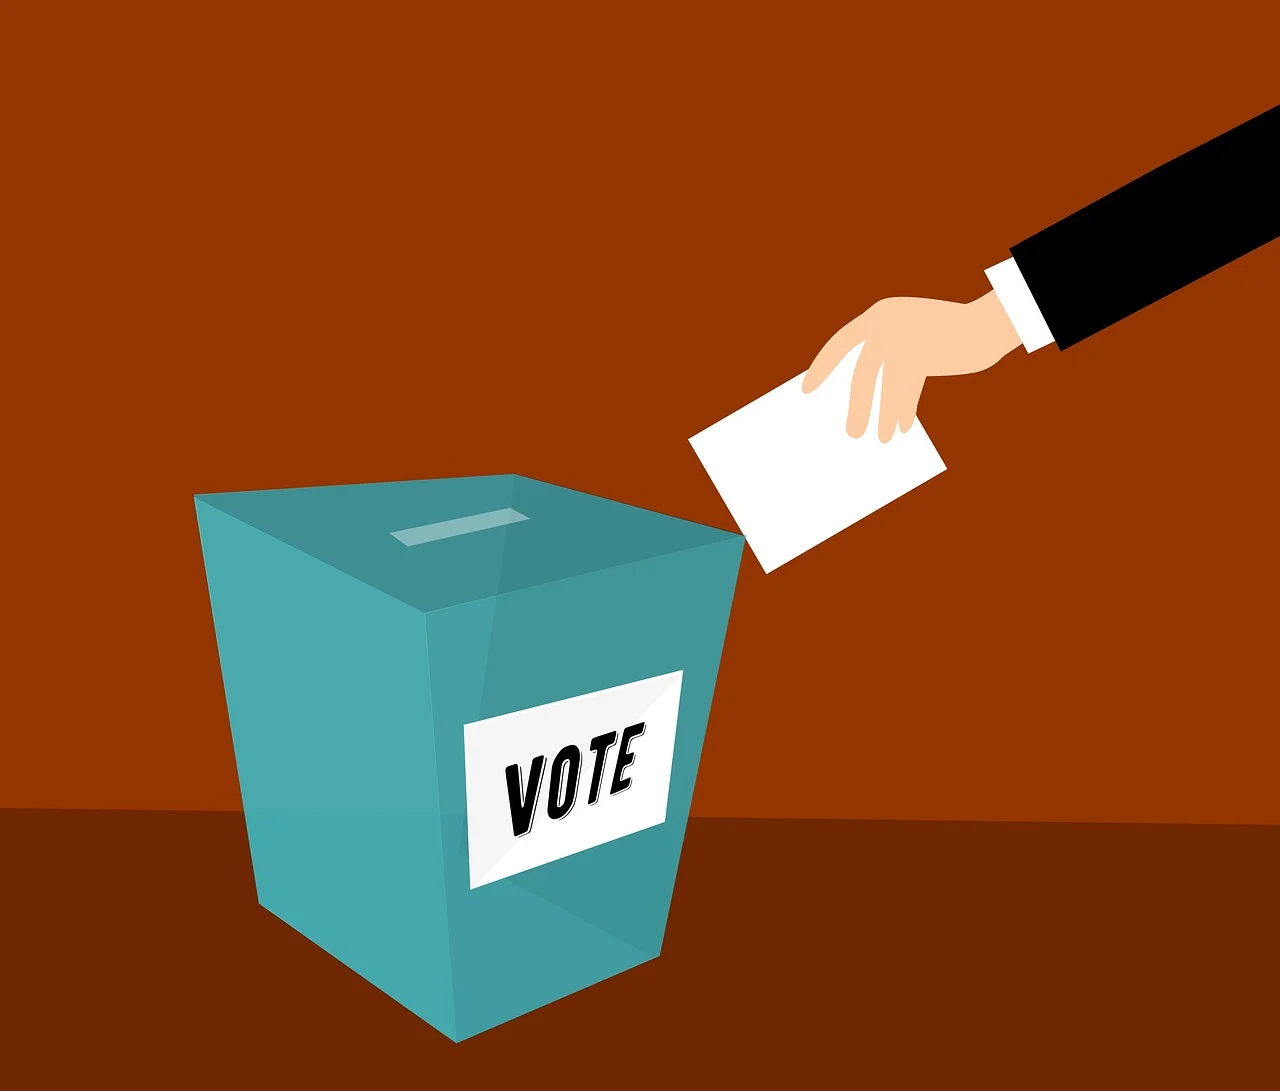 Ilustrasi pemilihan umum (SinPo.id/pixabay.com)